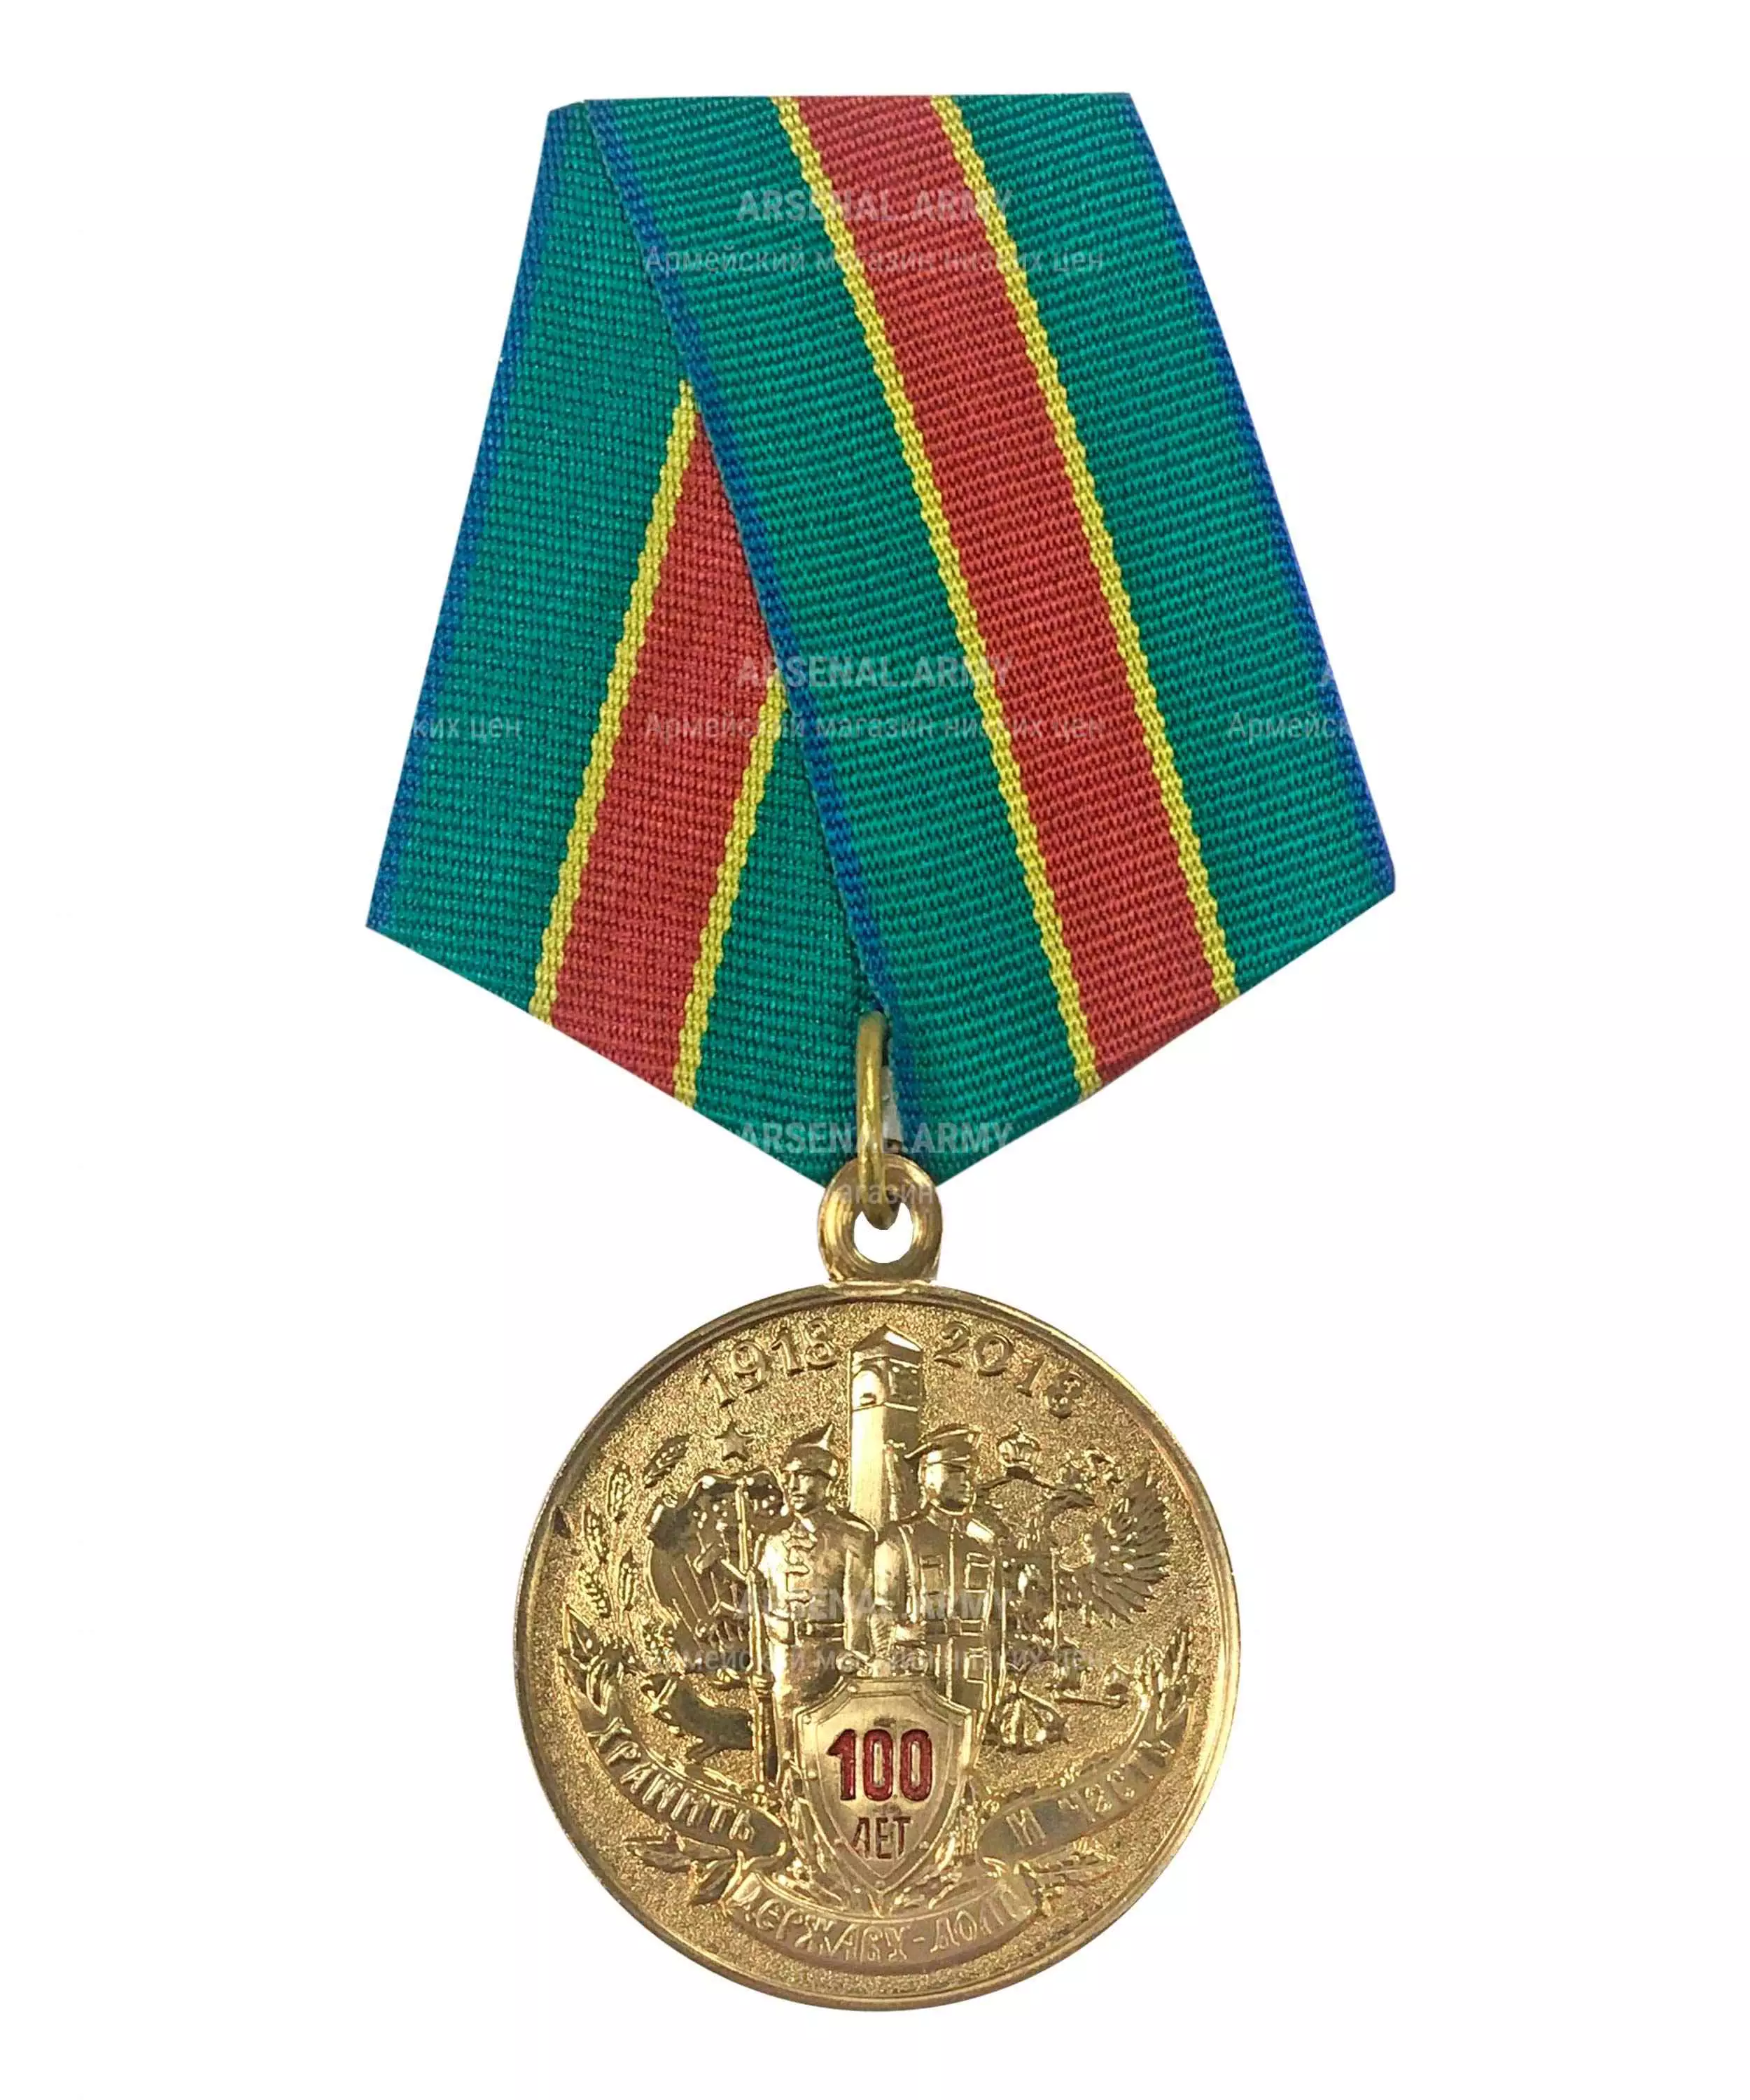 Медаль "100 лет пограничной службе" — 1